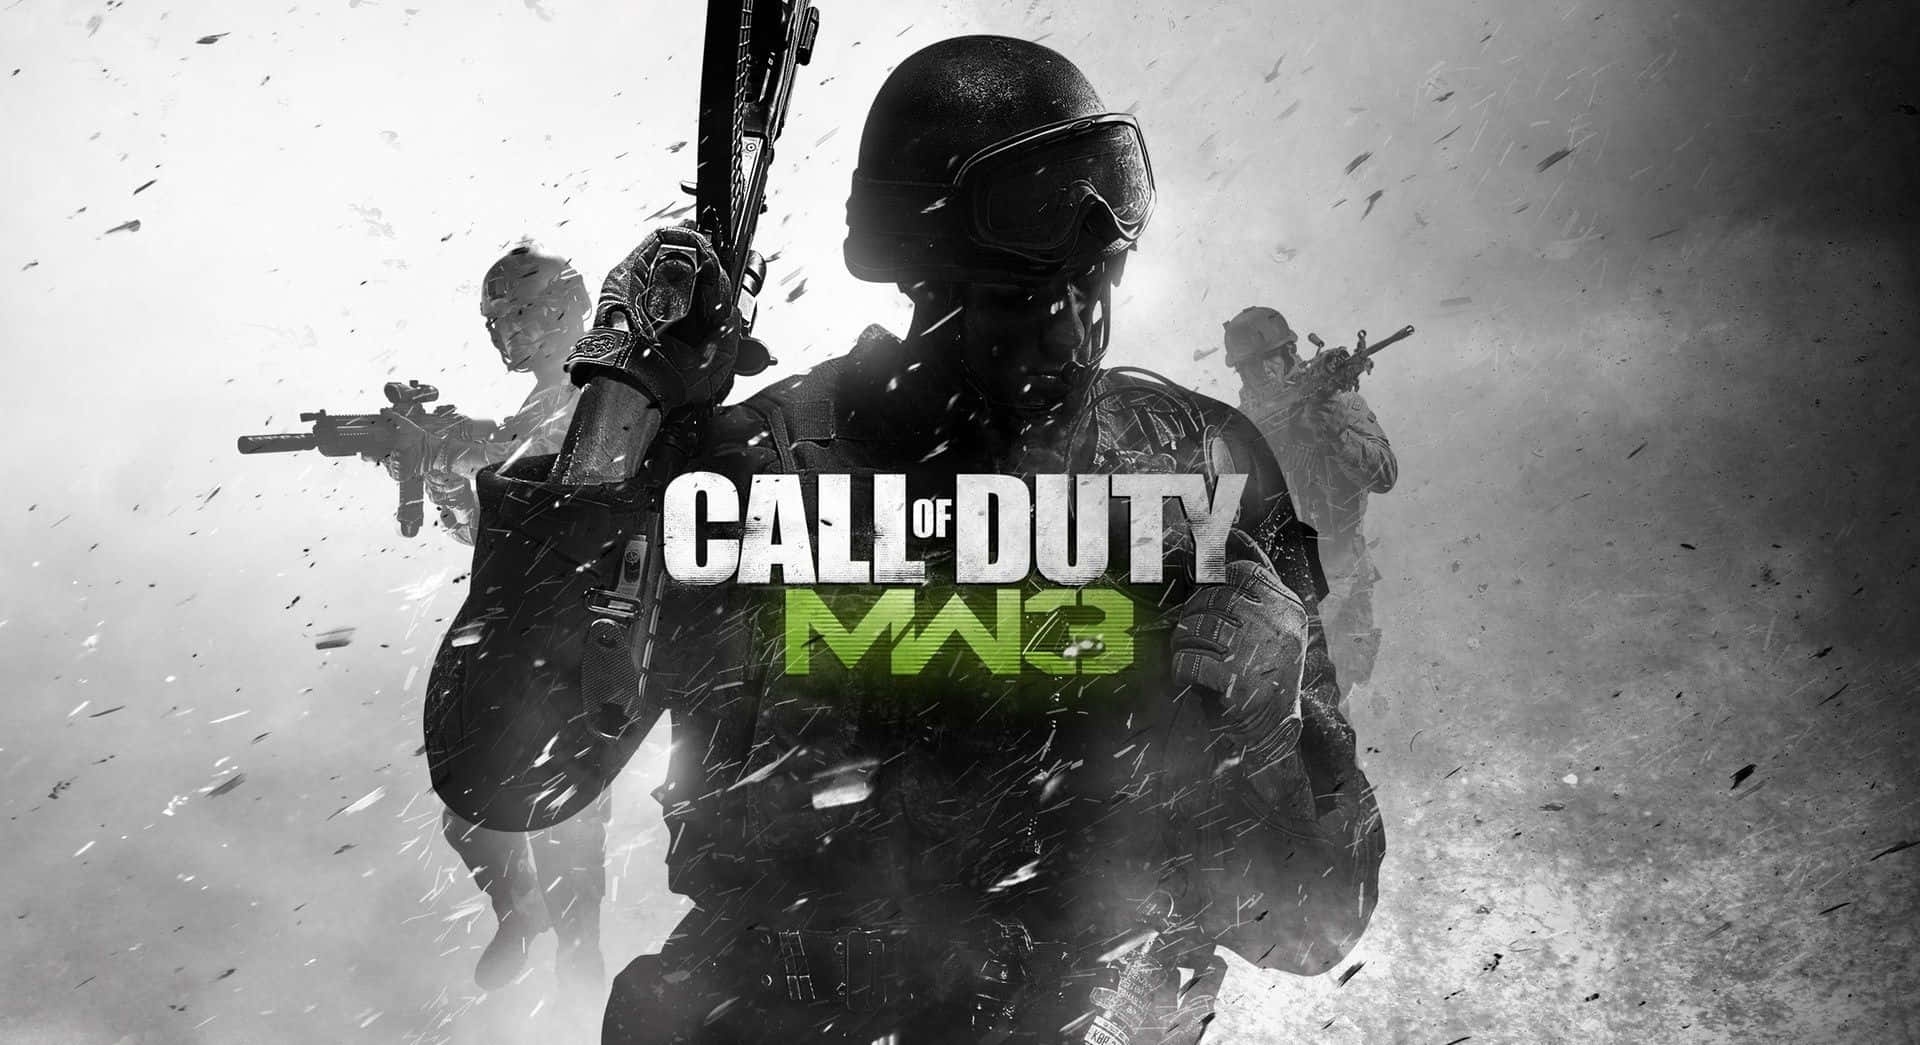 Call Of Duty Modern Warfare 3 Solders In Action Wallpaper